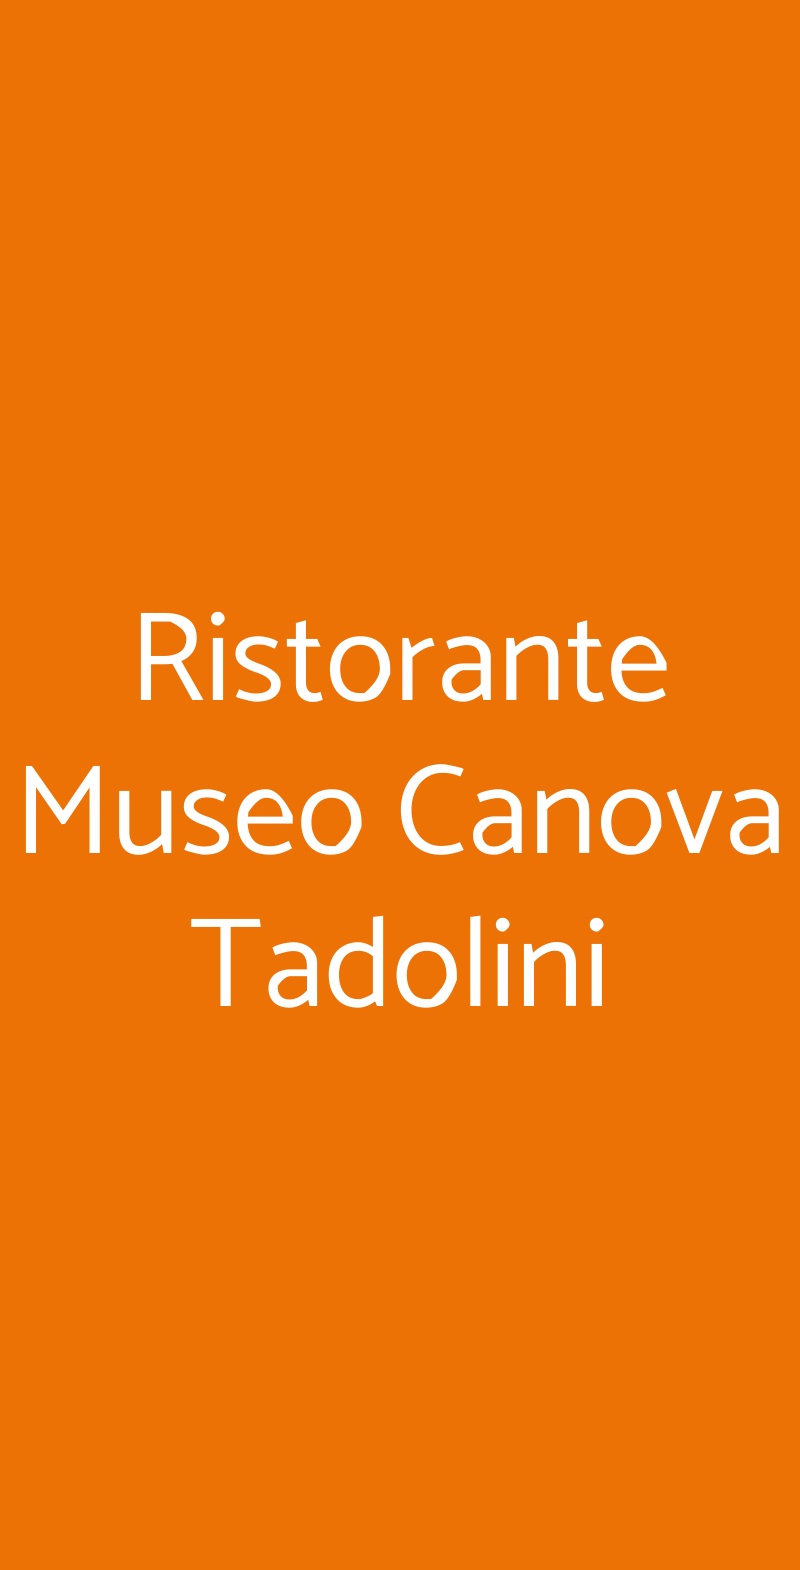 Ristorante Museo Canova Tadolini Roma menù 1 pagina